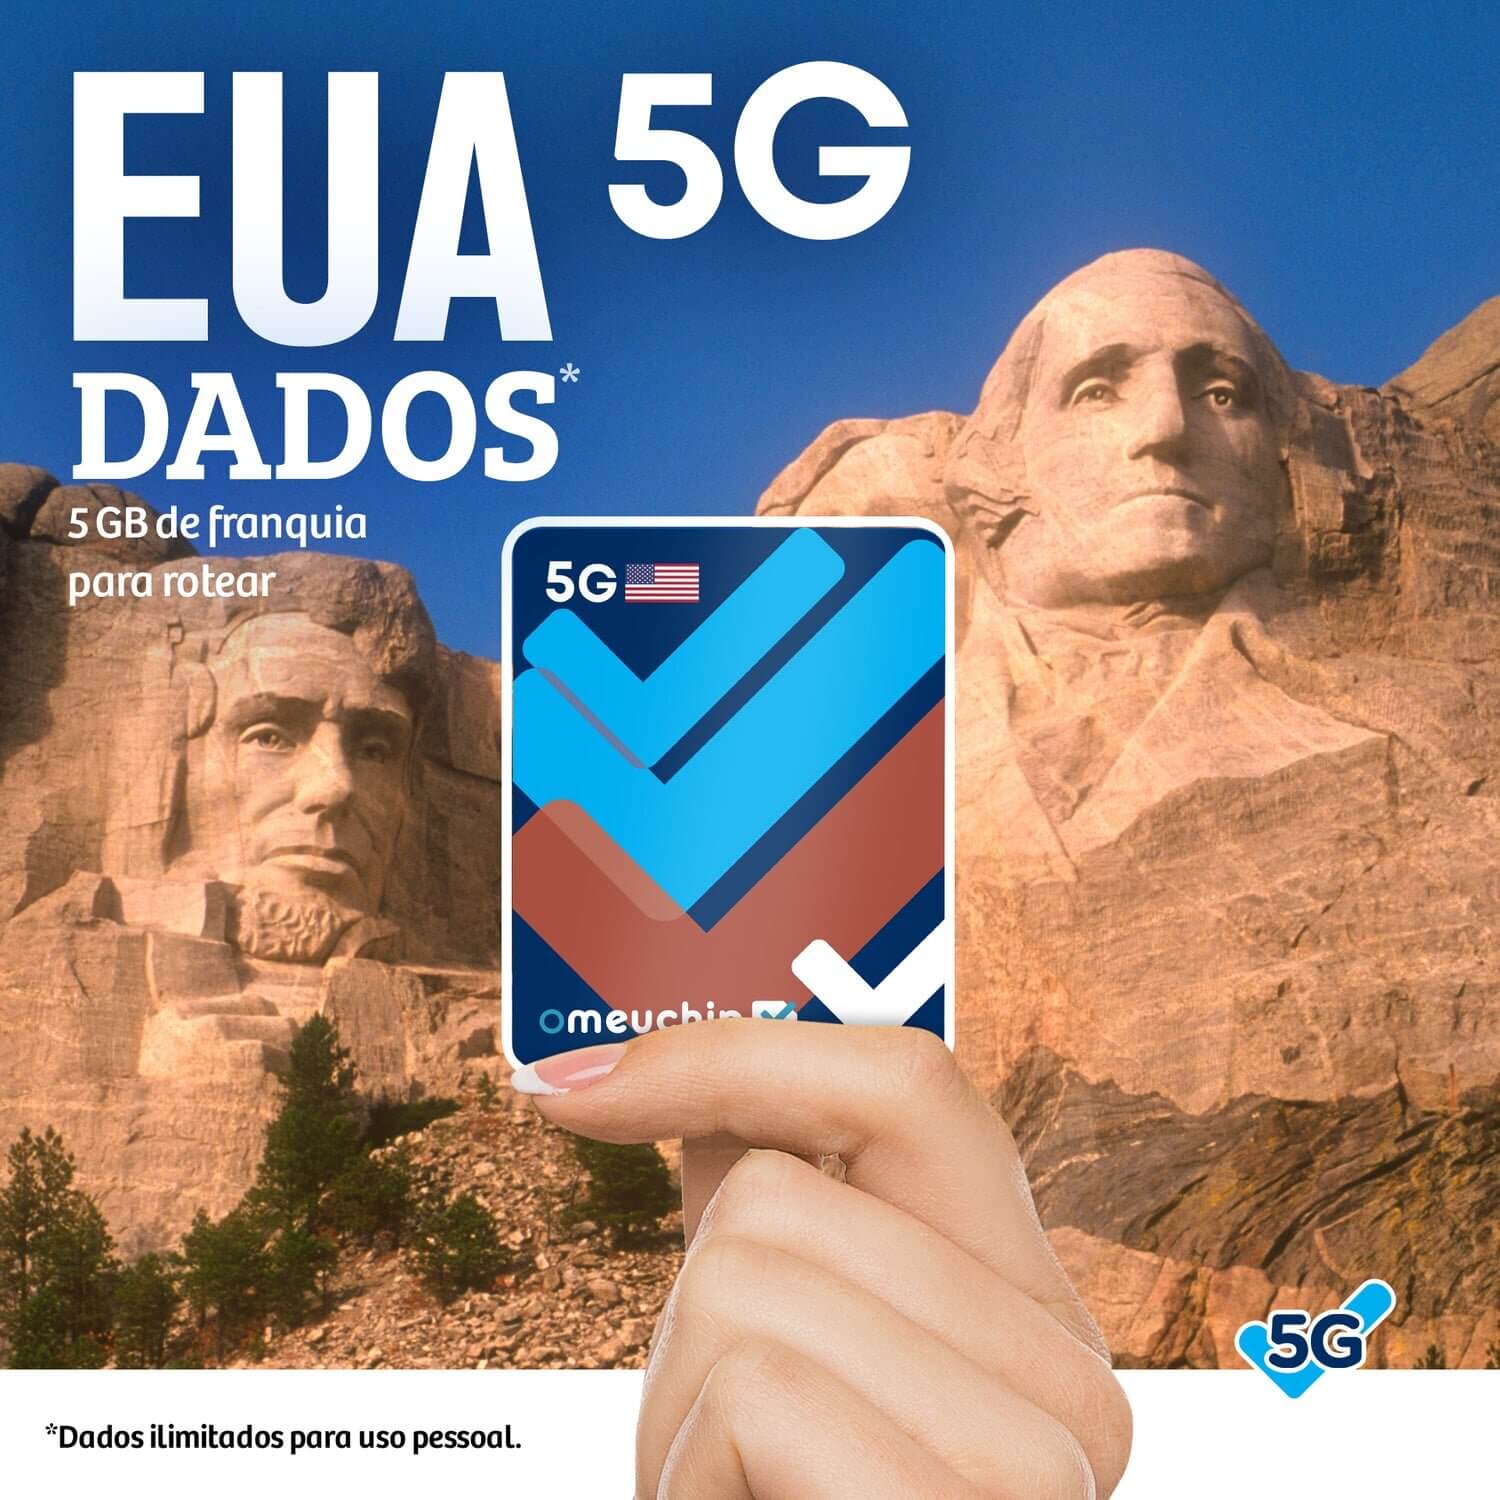 Banner Omeuchip EUA 5G Dados ,5 GB de franquia para rotear, e ao fundo Monte Rushmore